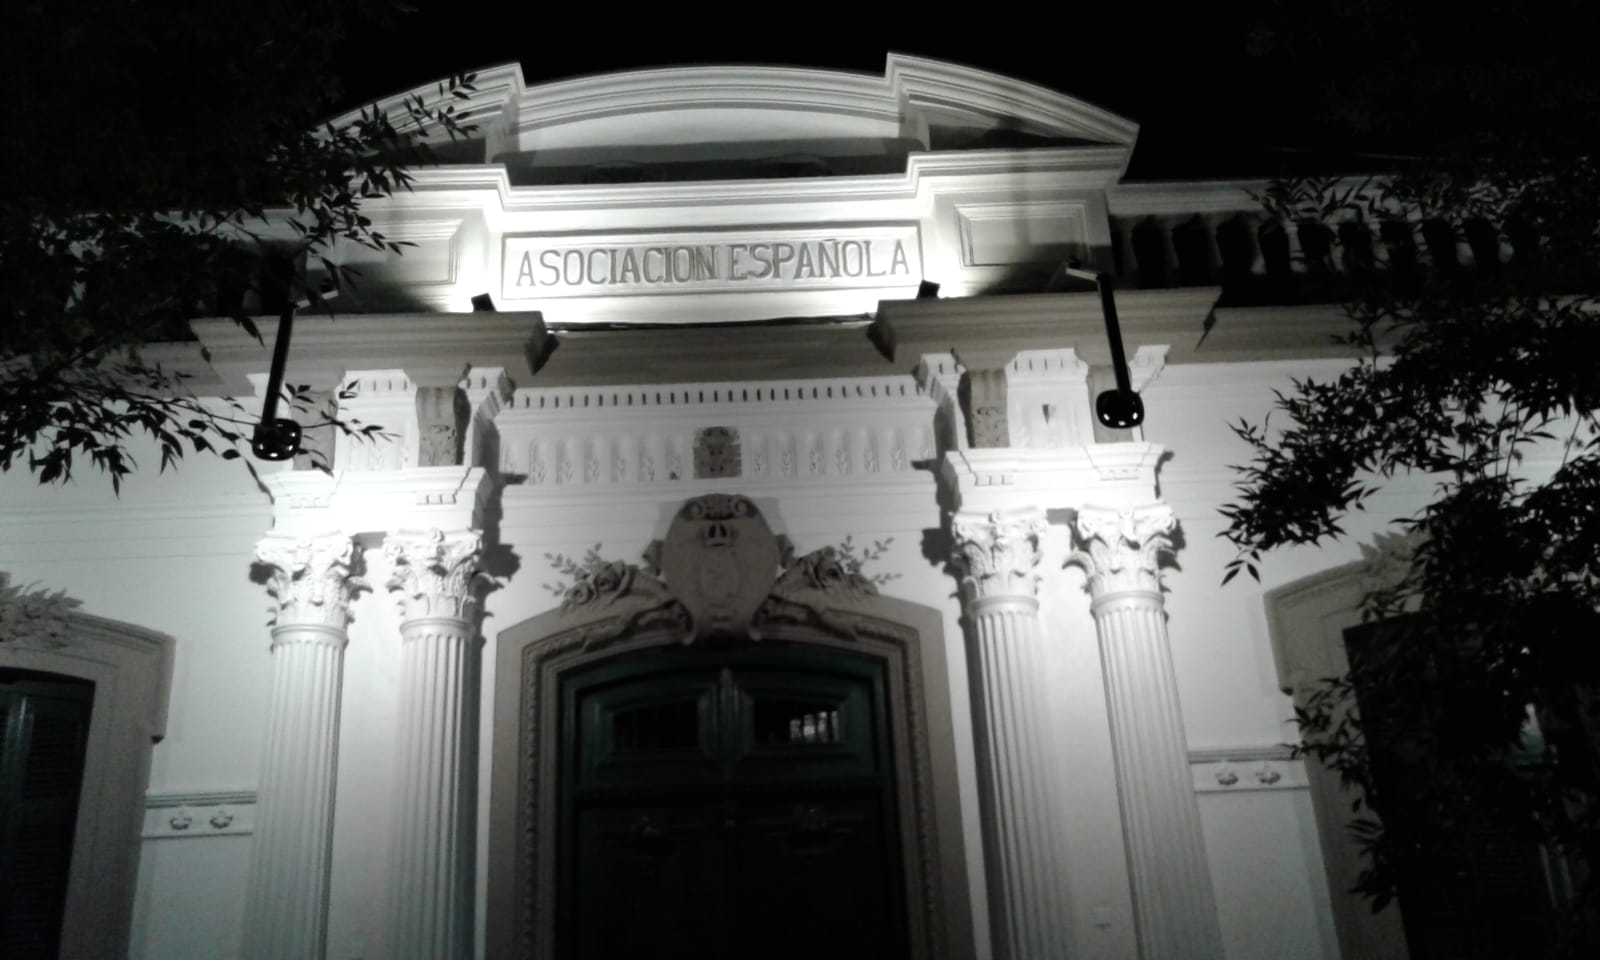 Vista parcial nocturna de la fachada del Instituto Cultural Español de San José